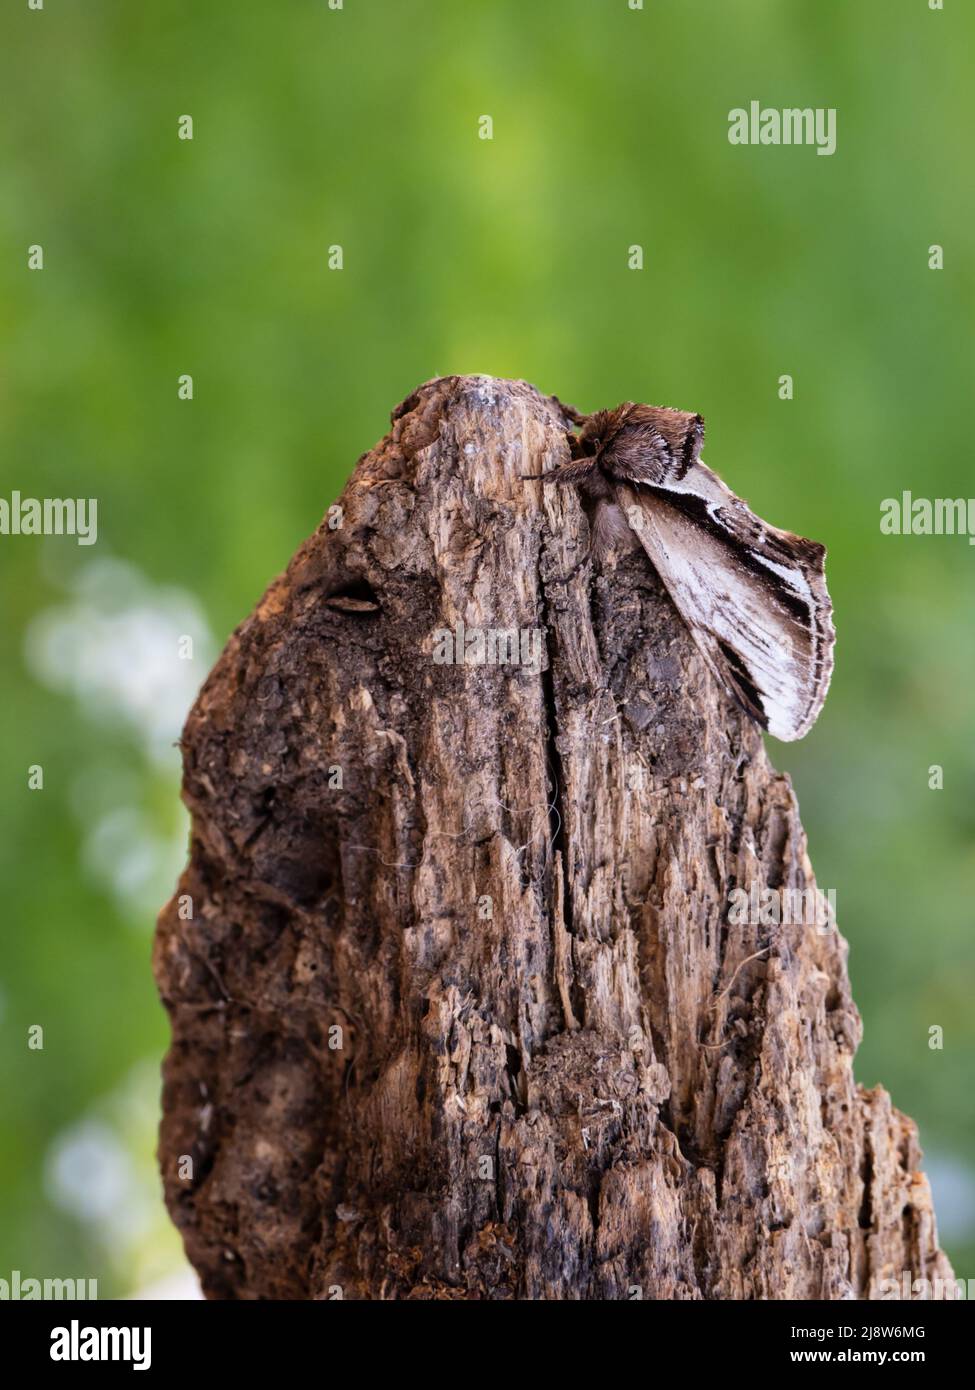 Pheosia gnoma, die kleinere Schwalbe prominente Motte, die ein Mitglied der Familie Notodontidae ist. Diese Probe ruht auf einem faulen Log. Stockfoto